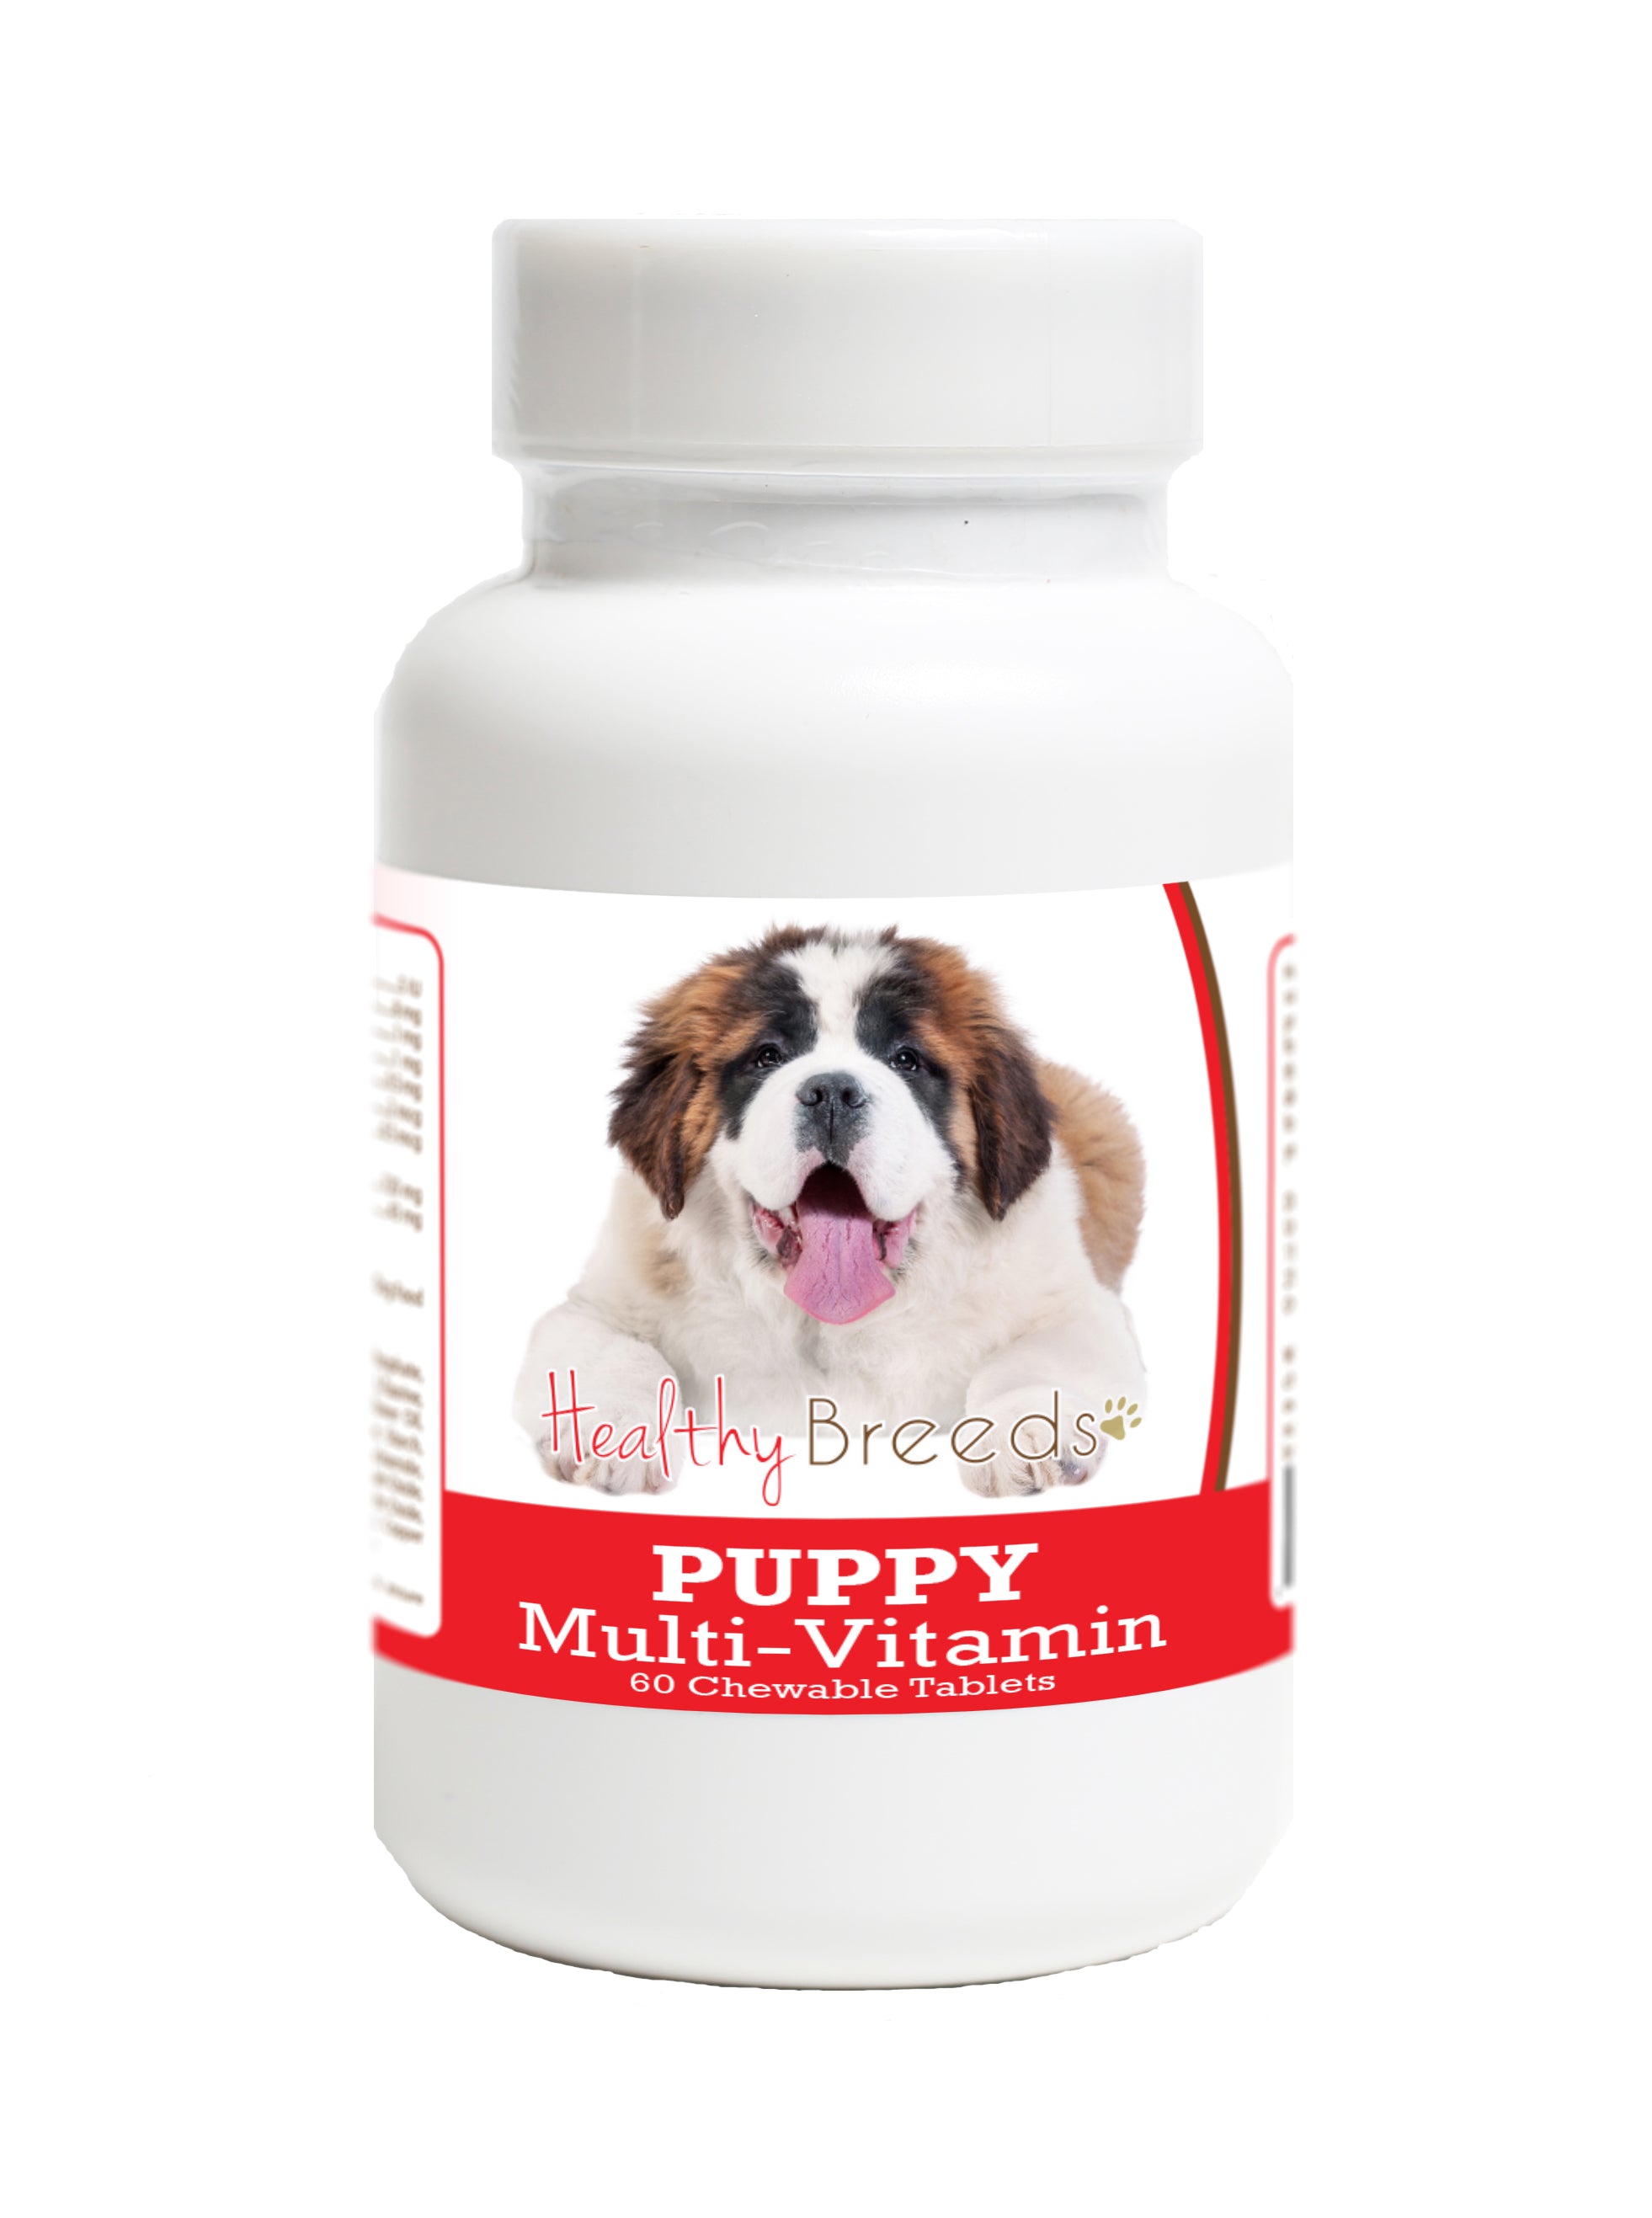 Saint Bernard Puppy Dog Multivitamin Tablet 60 Count